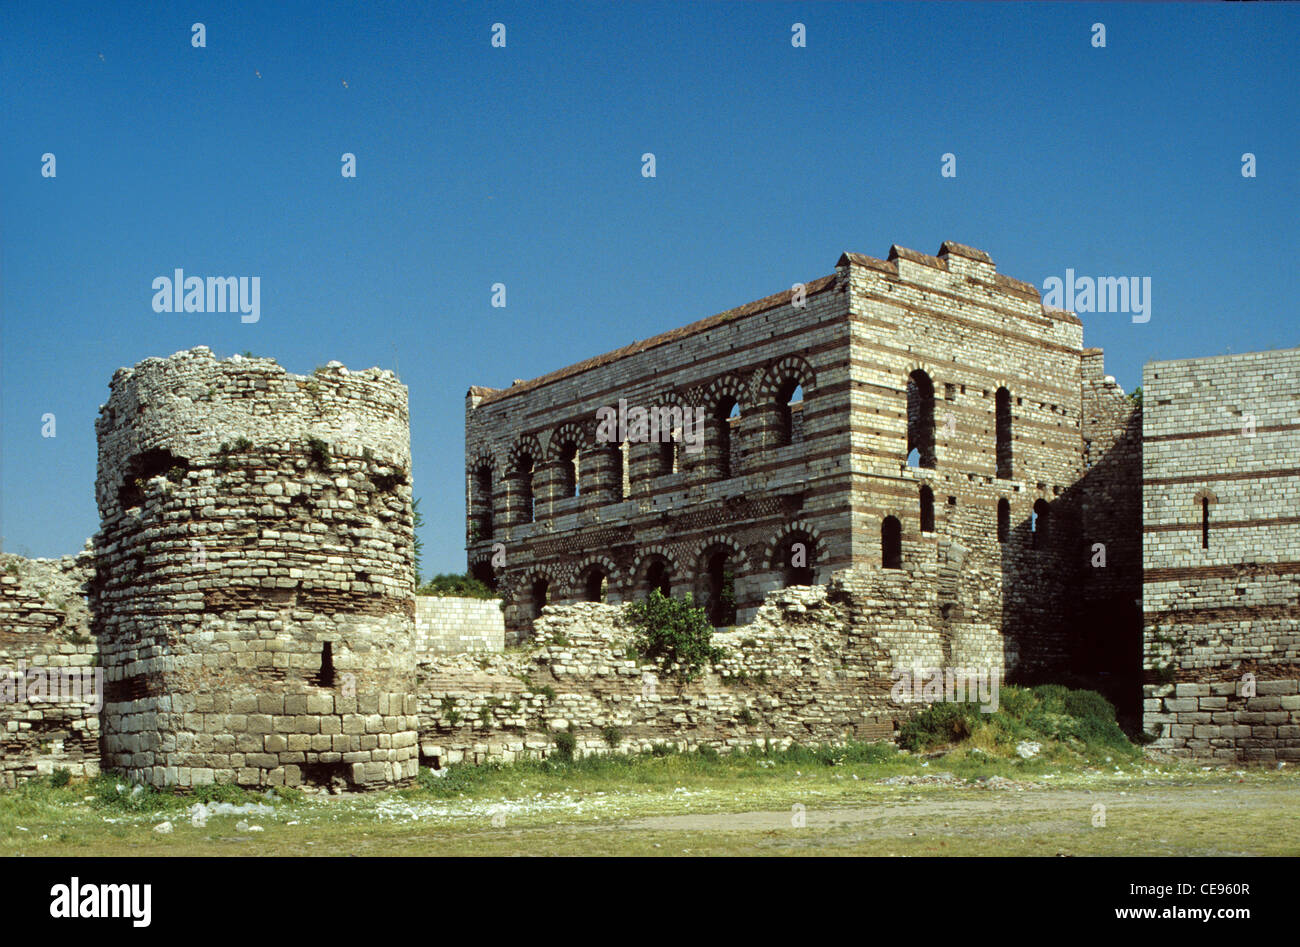 C13ème Palais byzantin du Porphyrogenitus, ou Tekfur Sarayi, et les remparts théodosiens de Constantinople, Istanbul Turquie Banque D'Images